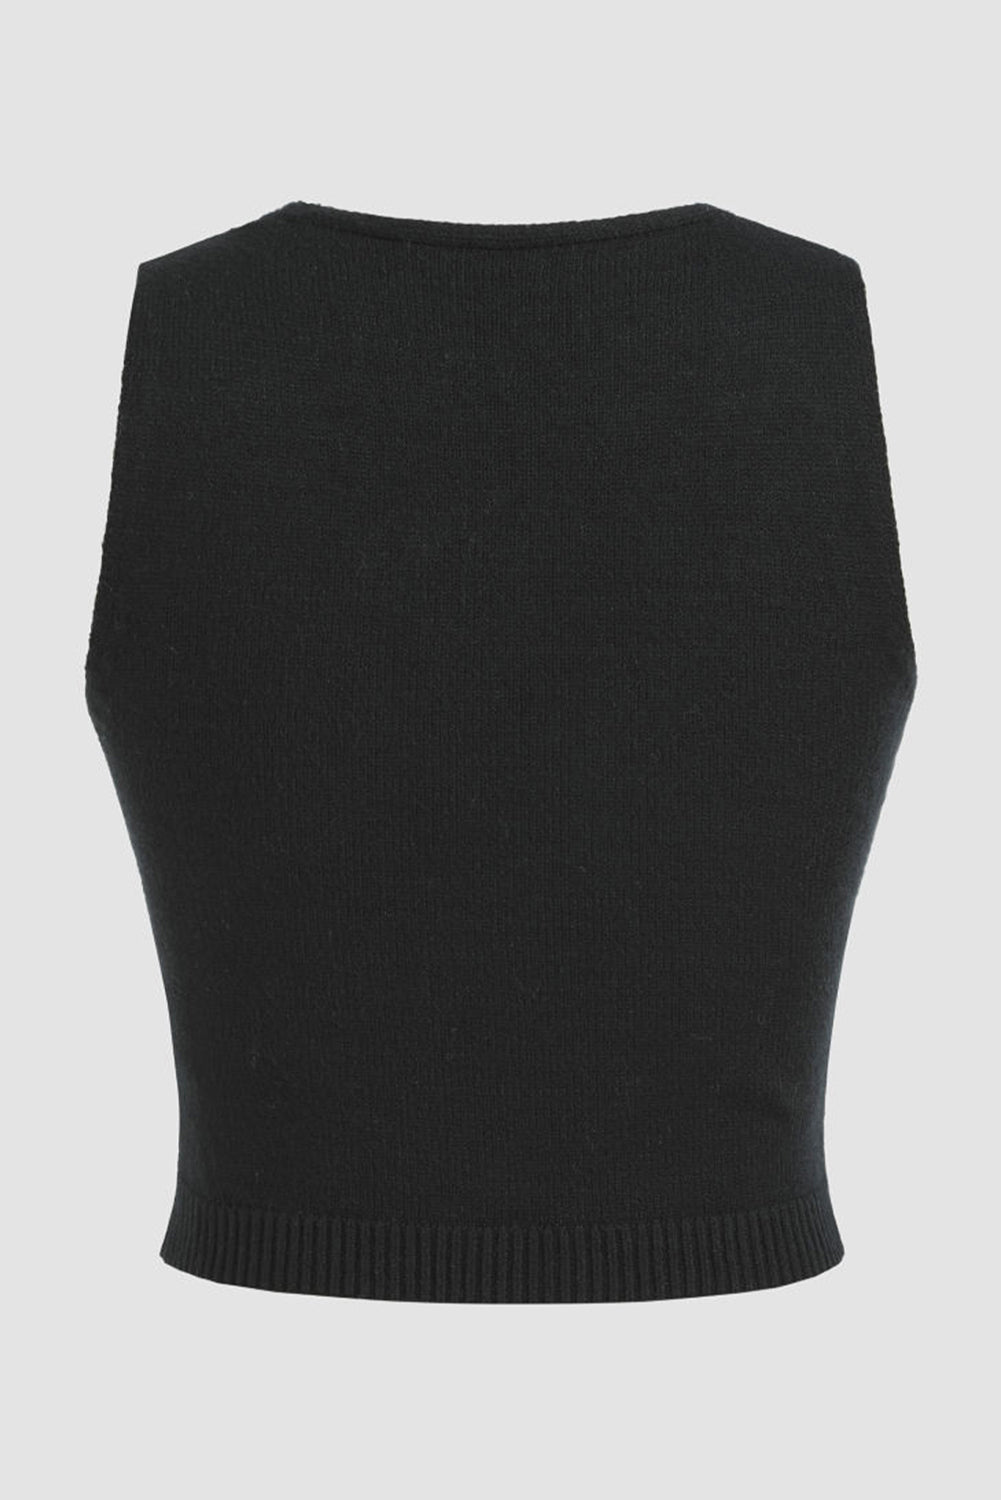 Schwarze kurze Pulloverweste mit 3D-Blumendekor